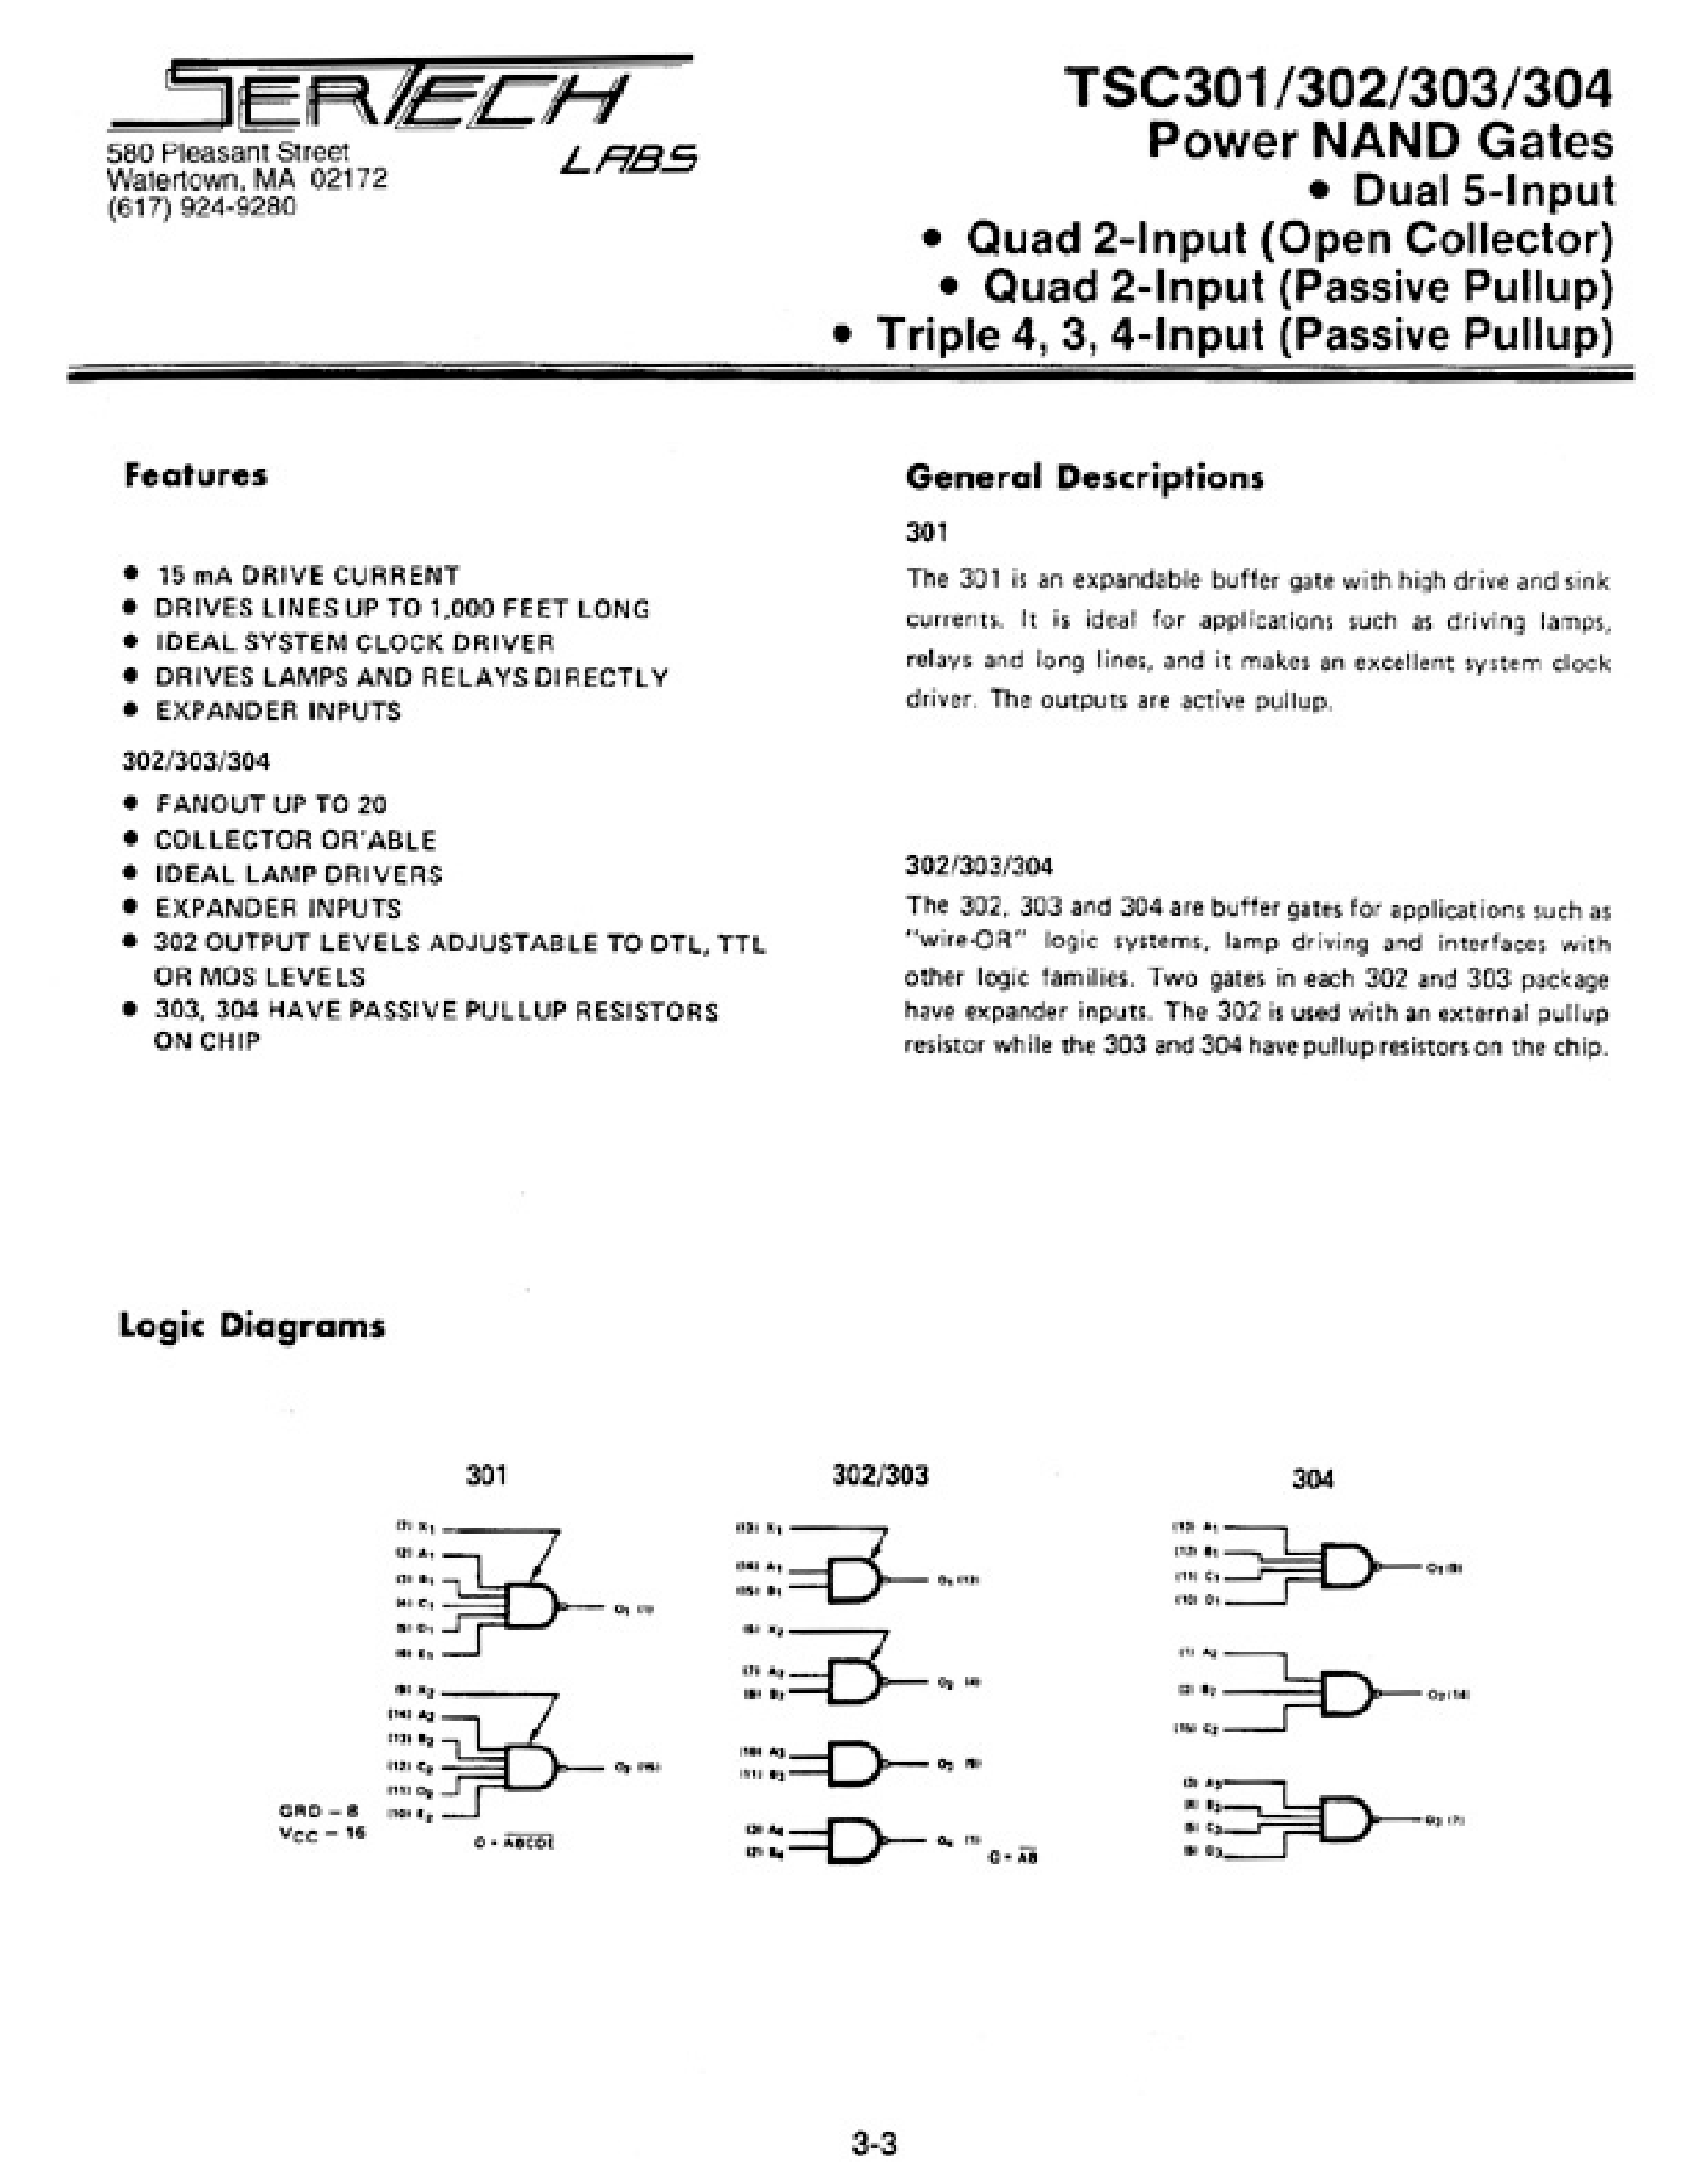 Даташит TC303 - POWER NAND GATES страница 1